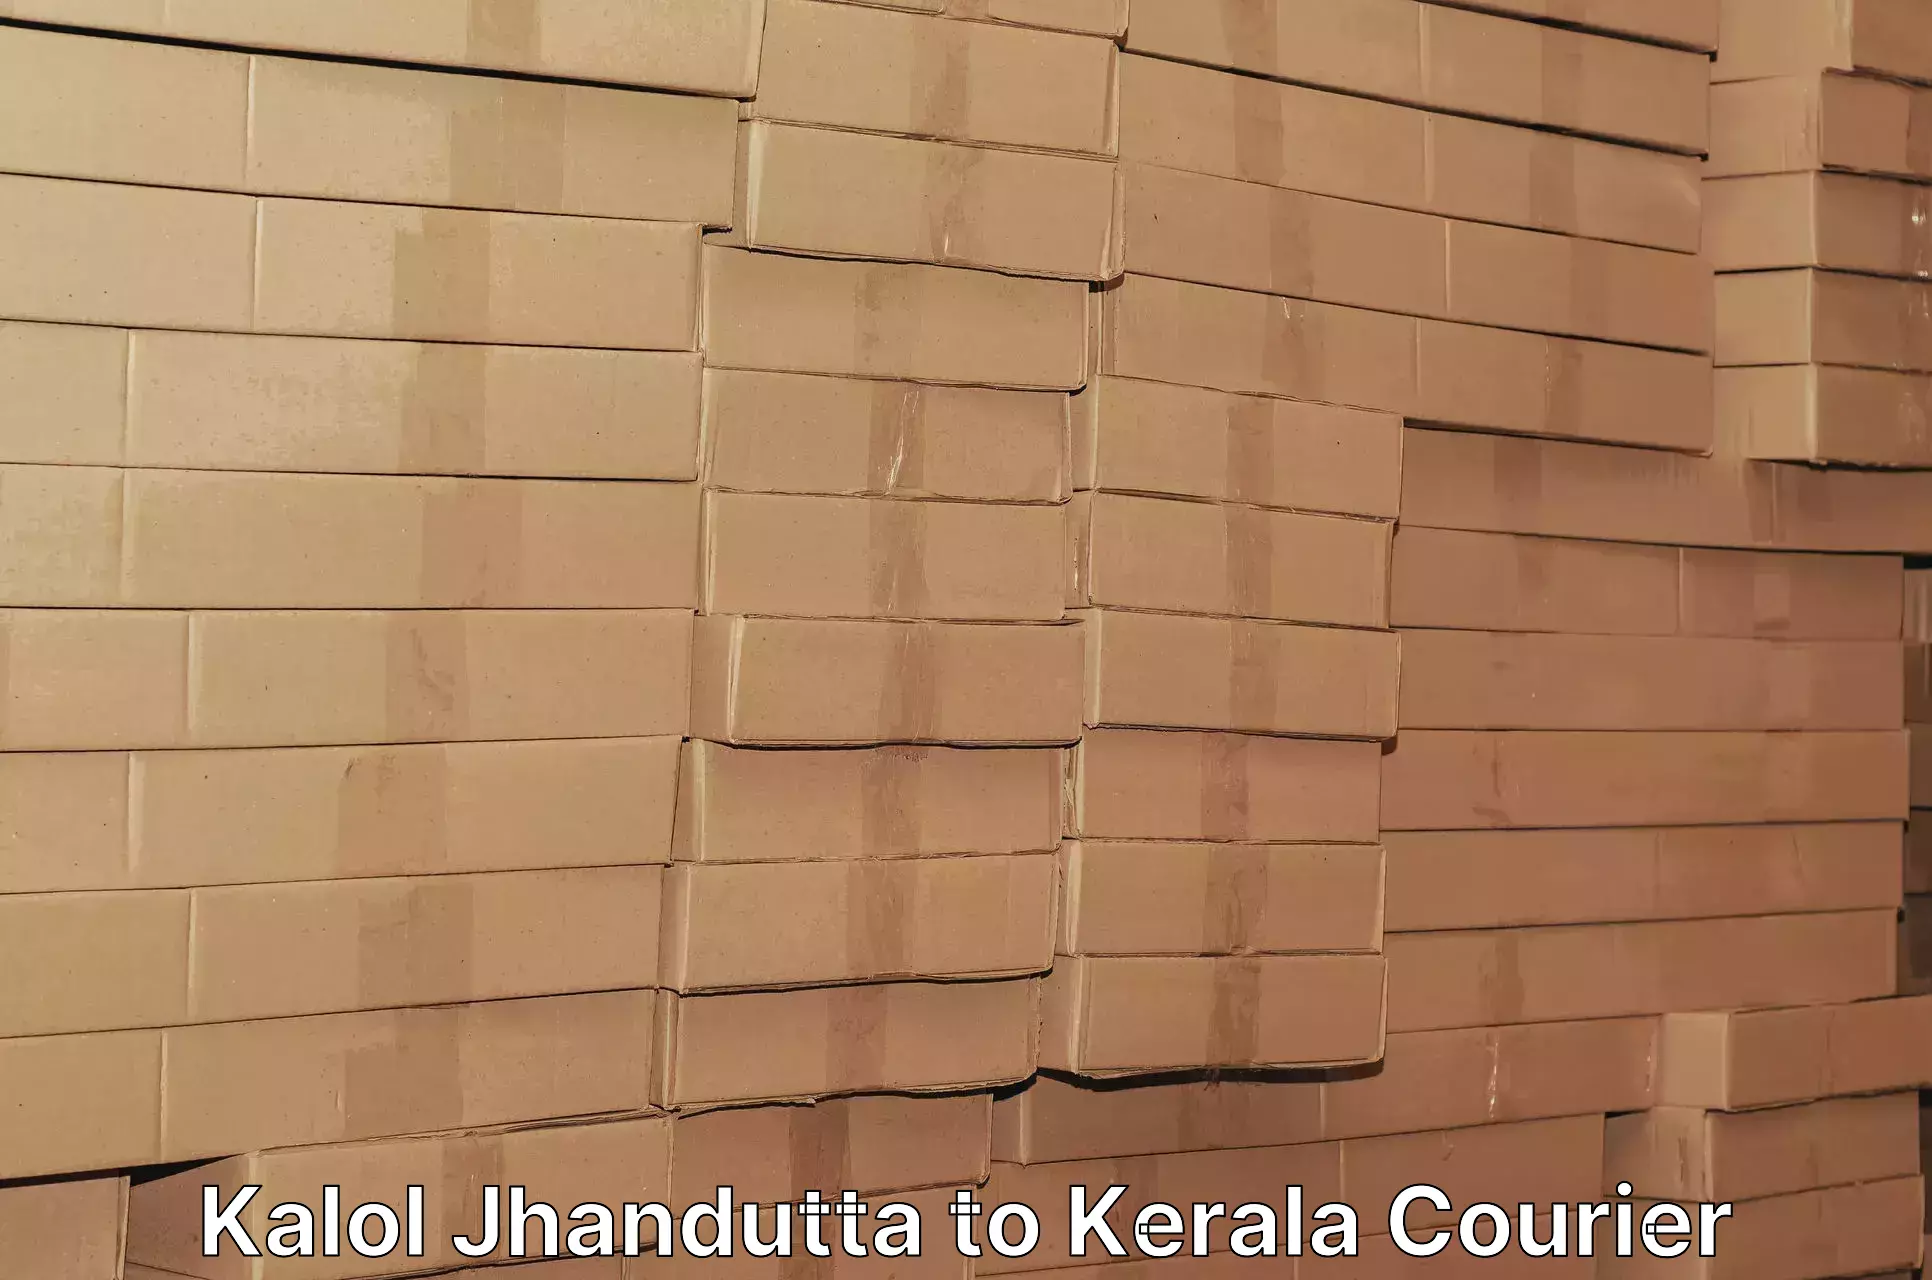 State-of-the-art courier technology Kalol Jhandutta to Kakkayam